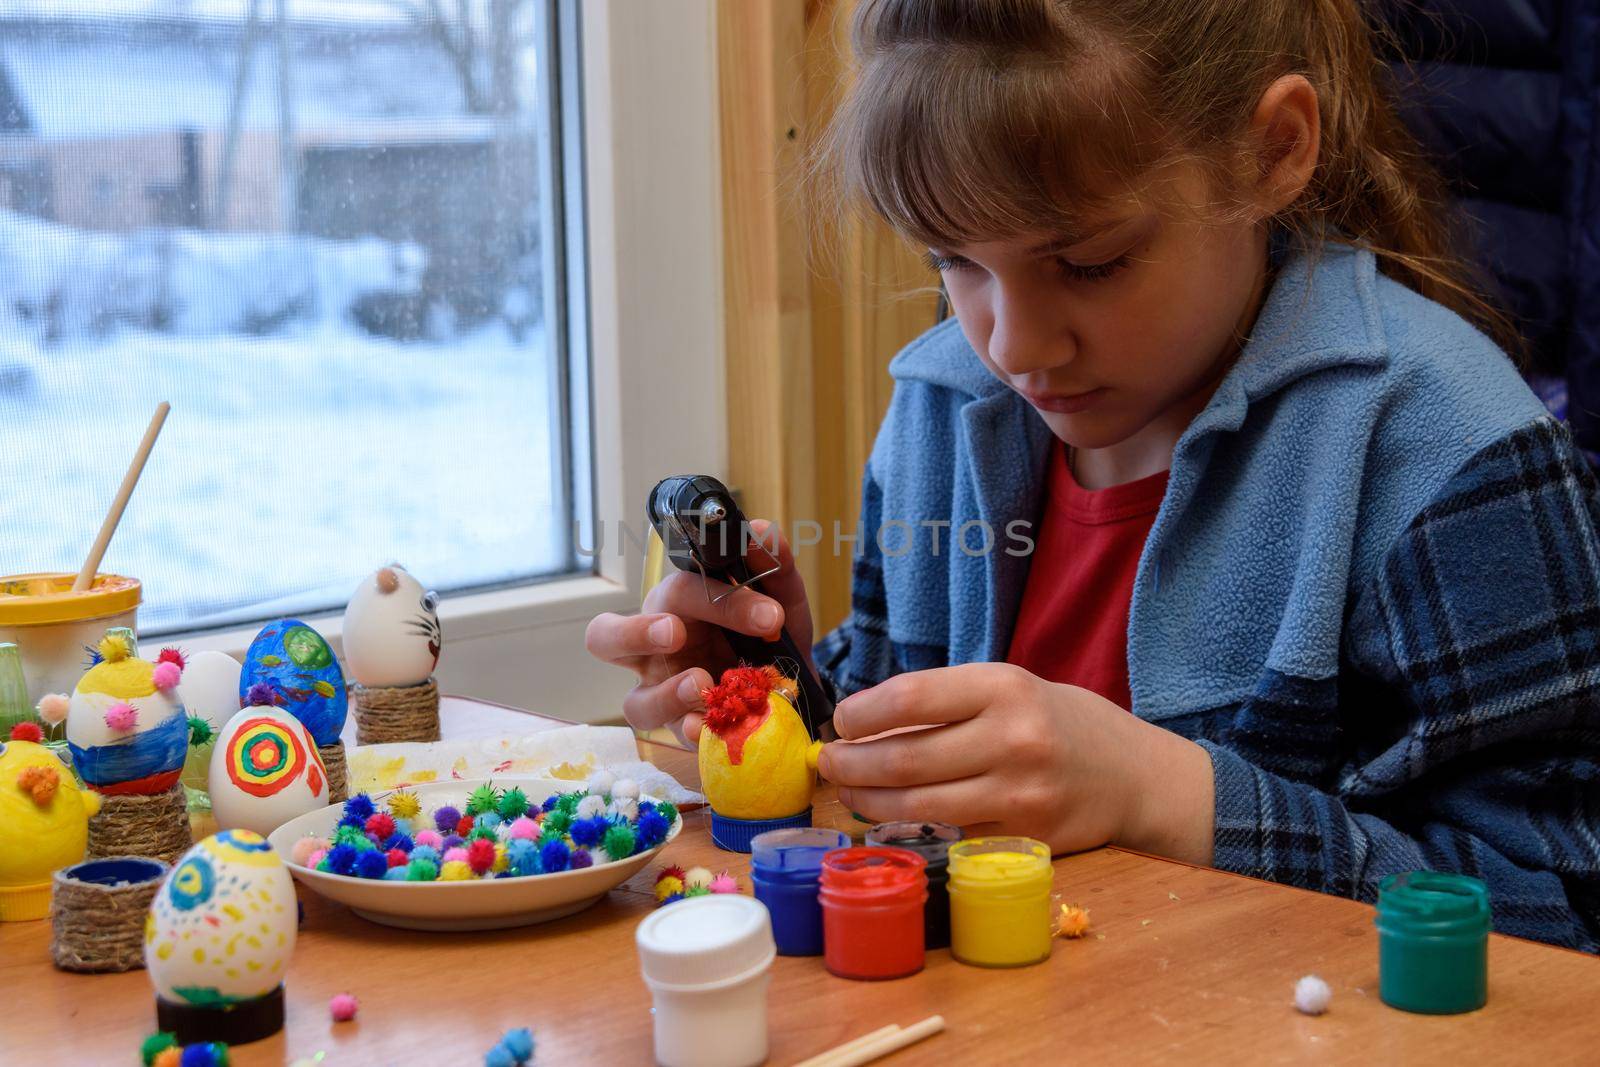 A girl glues a decorative element to a craft with a glue gun